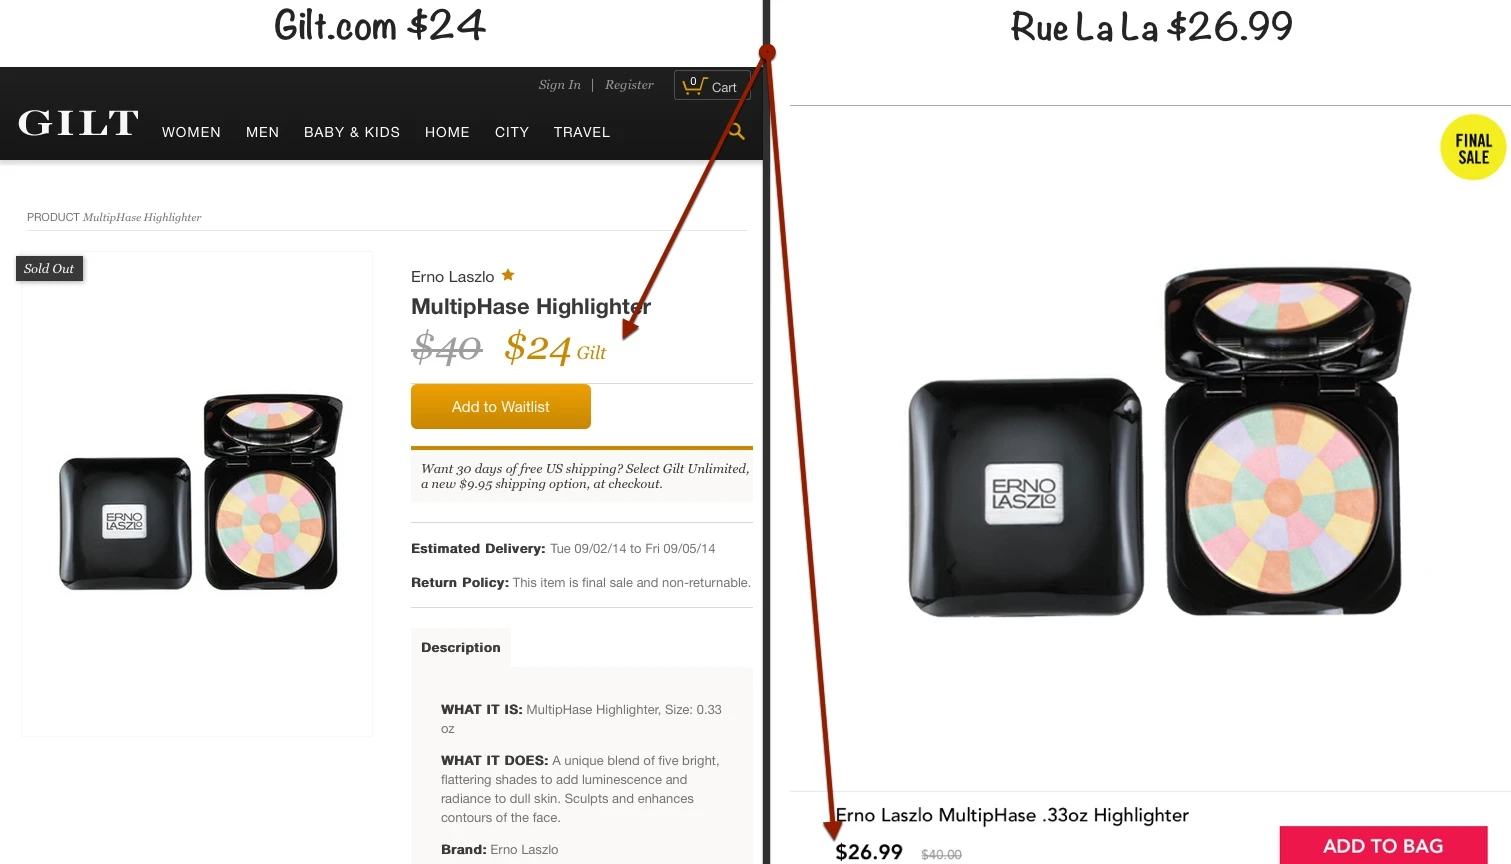 Flash sale company Rue La La to buy rival Gilt